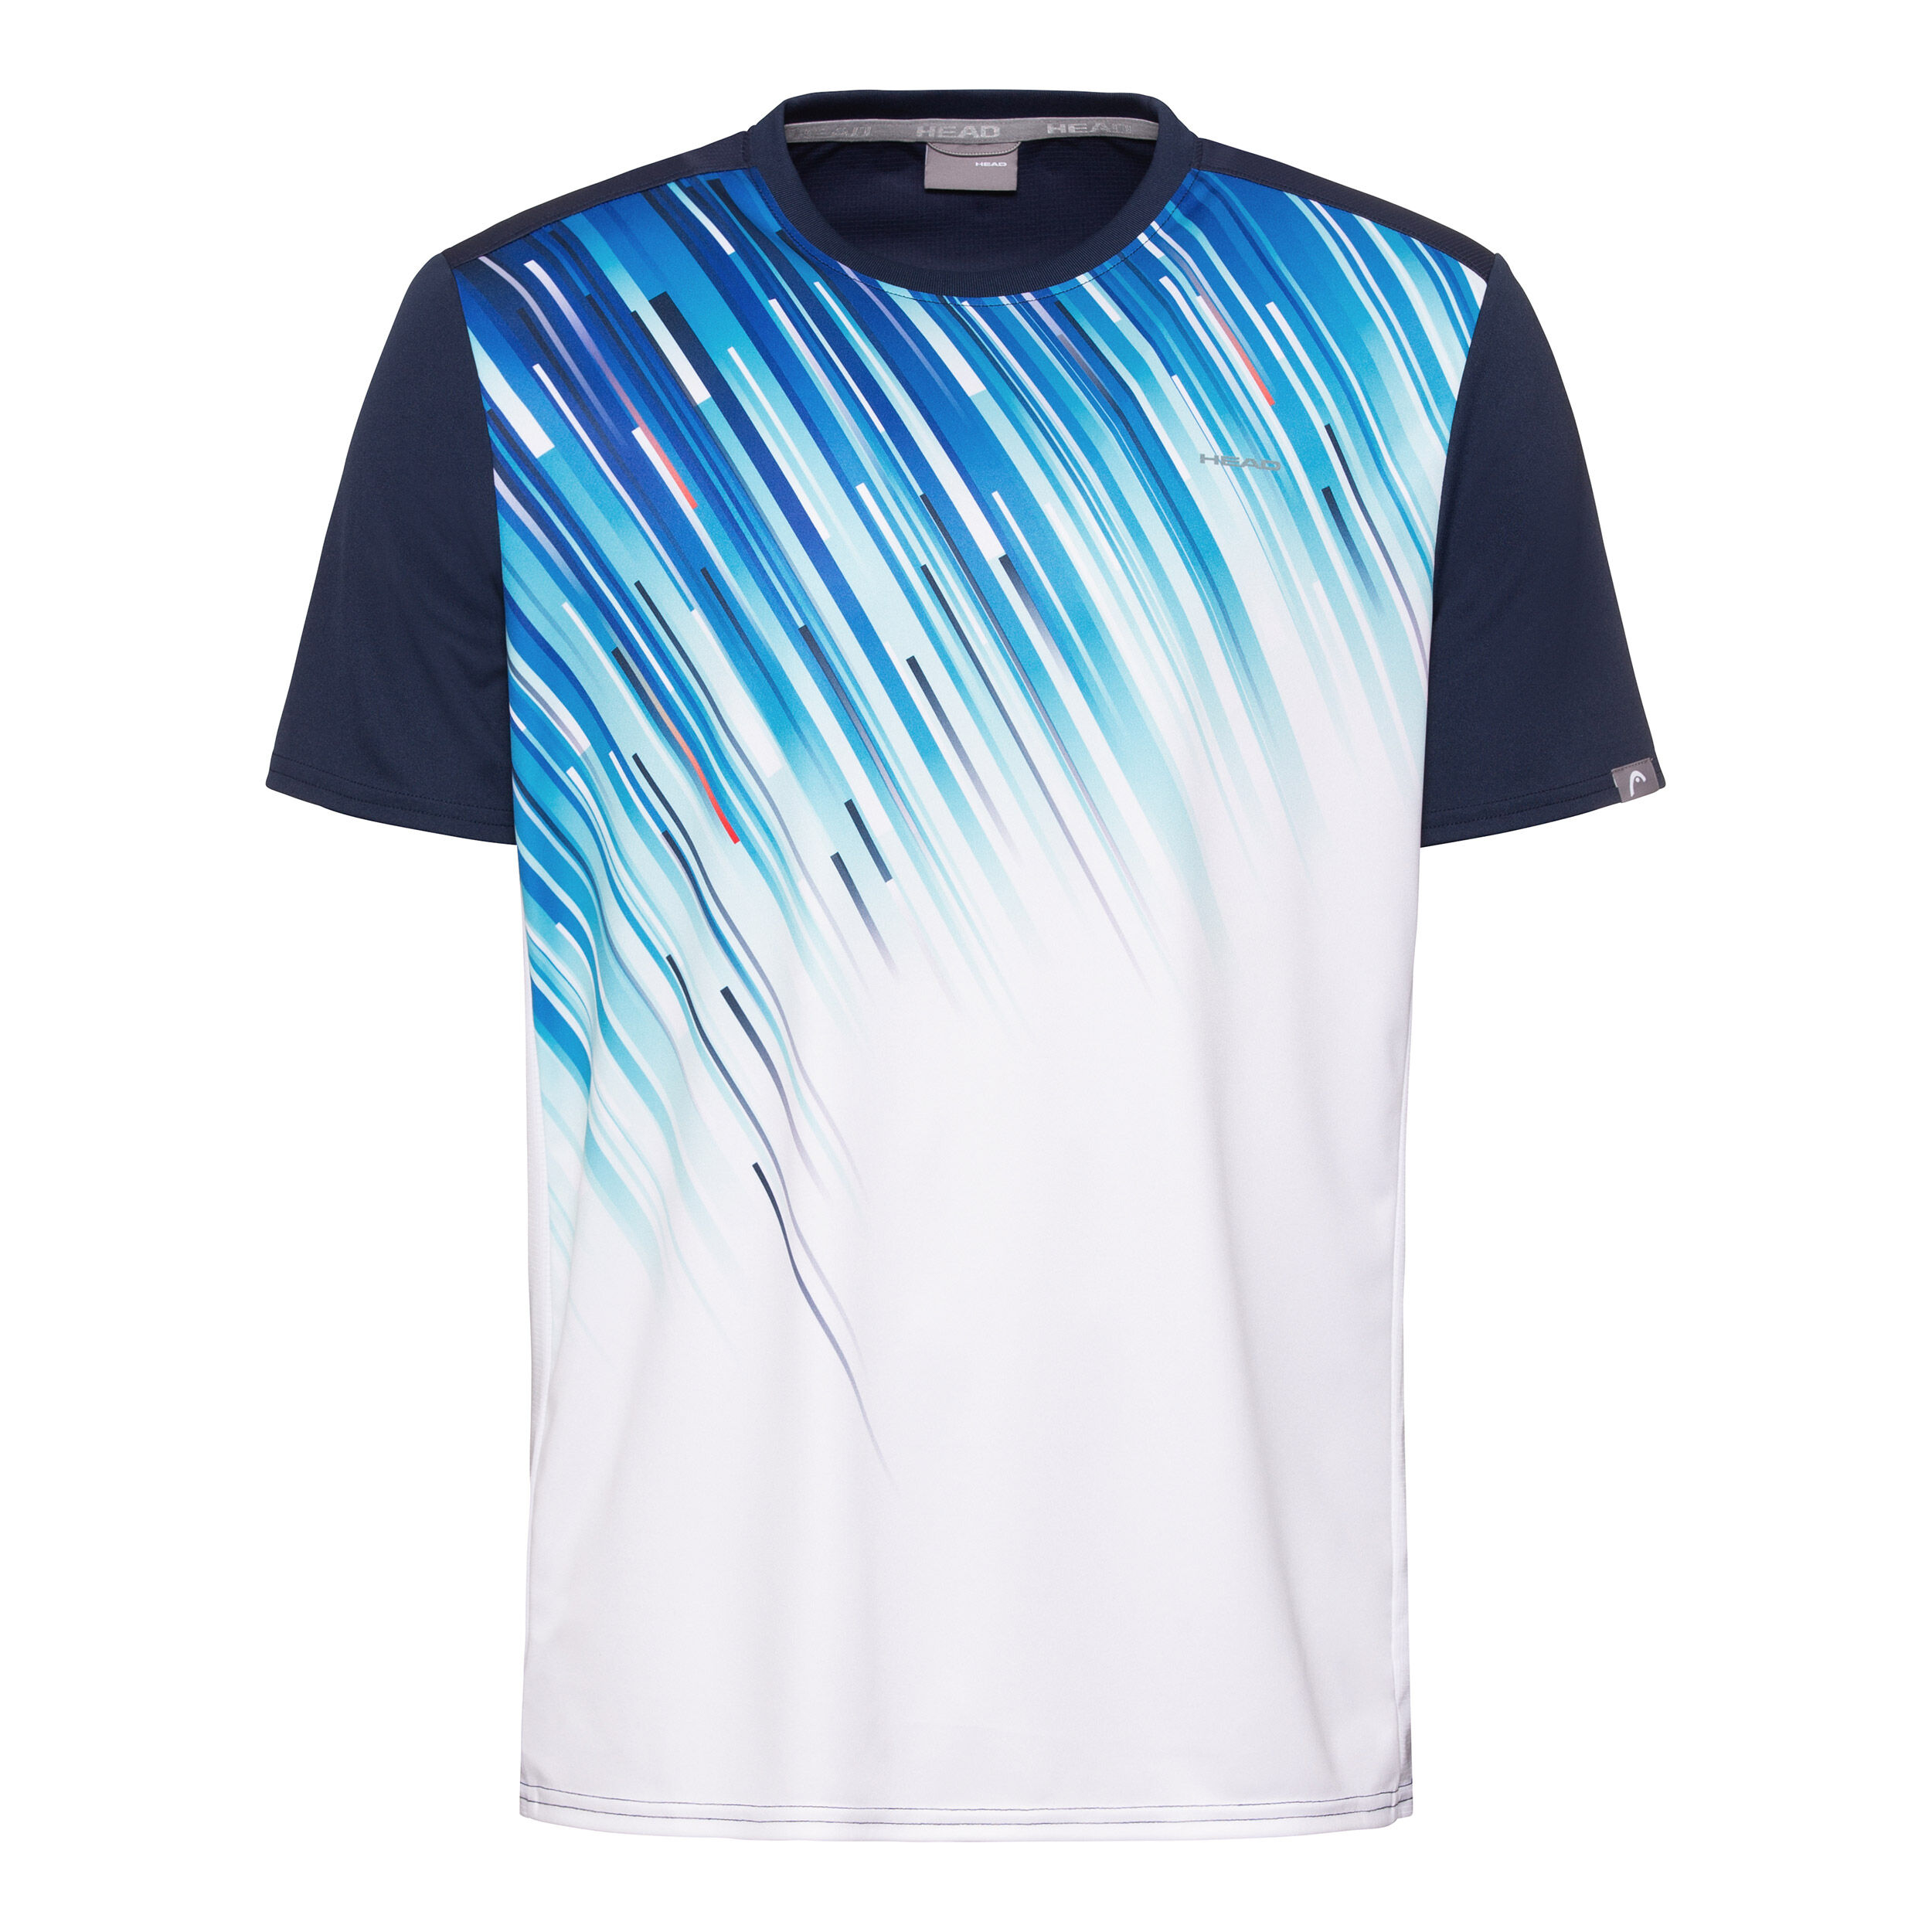 Head Herren T-Shirt Slider Tennisshirt Sportshirt Blau  811240 